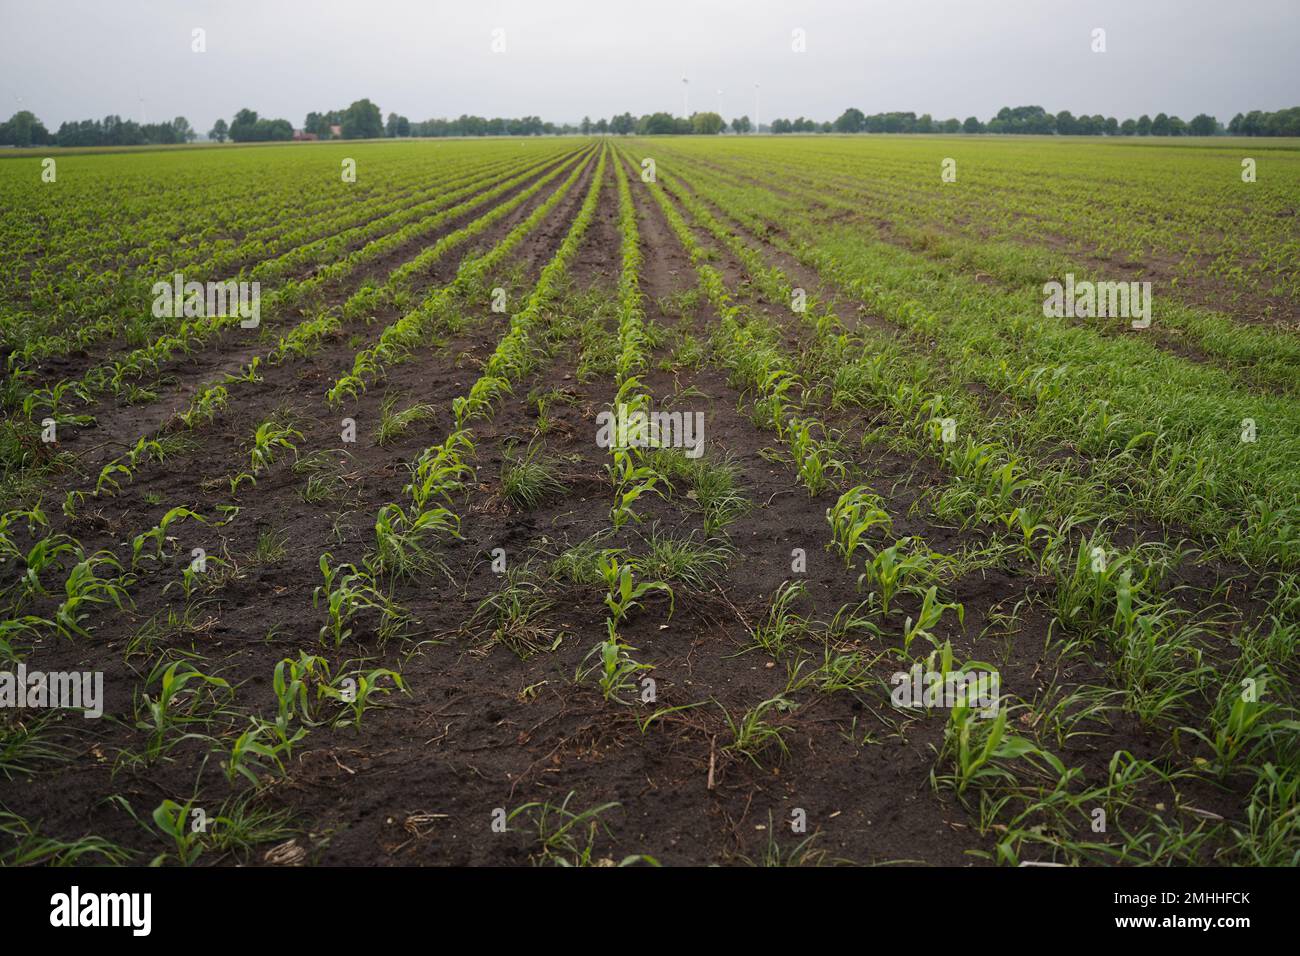 Un champ de jeunes pousses de maïs s'étendant jusqu'à l'horizon Banque D'Images